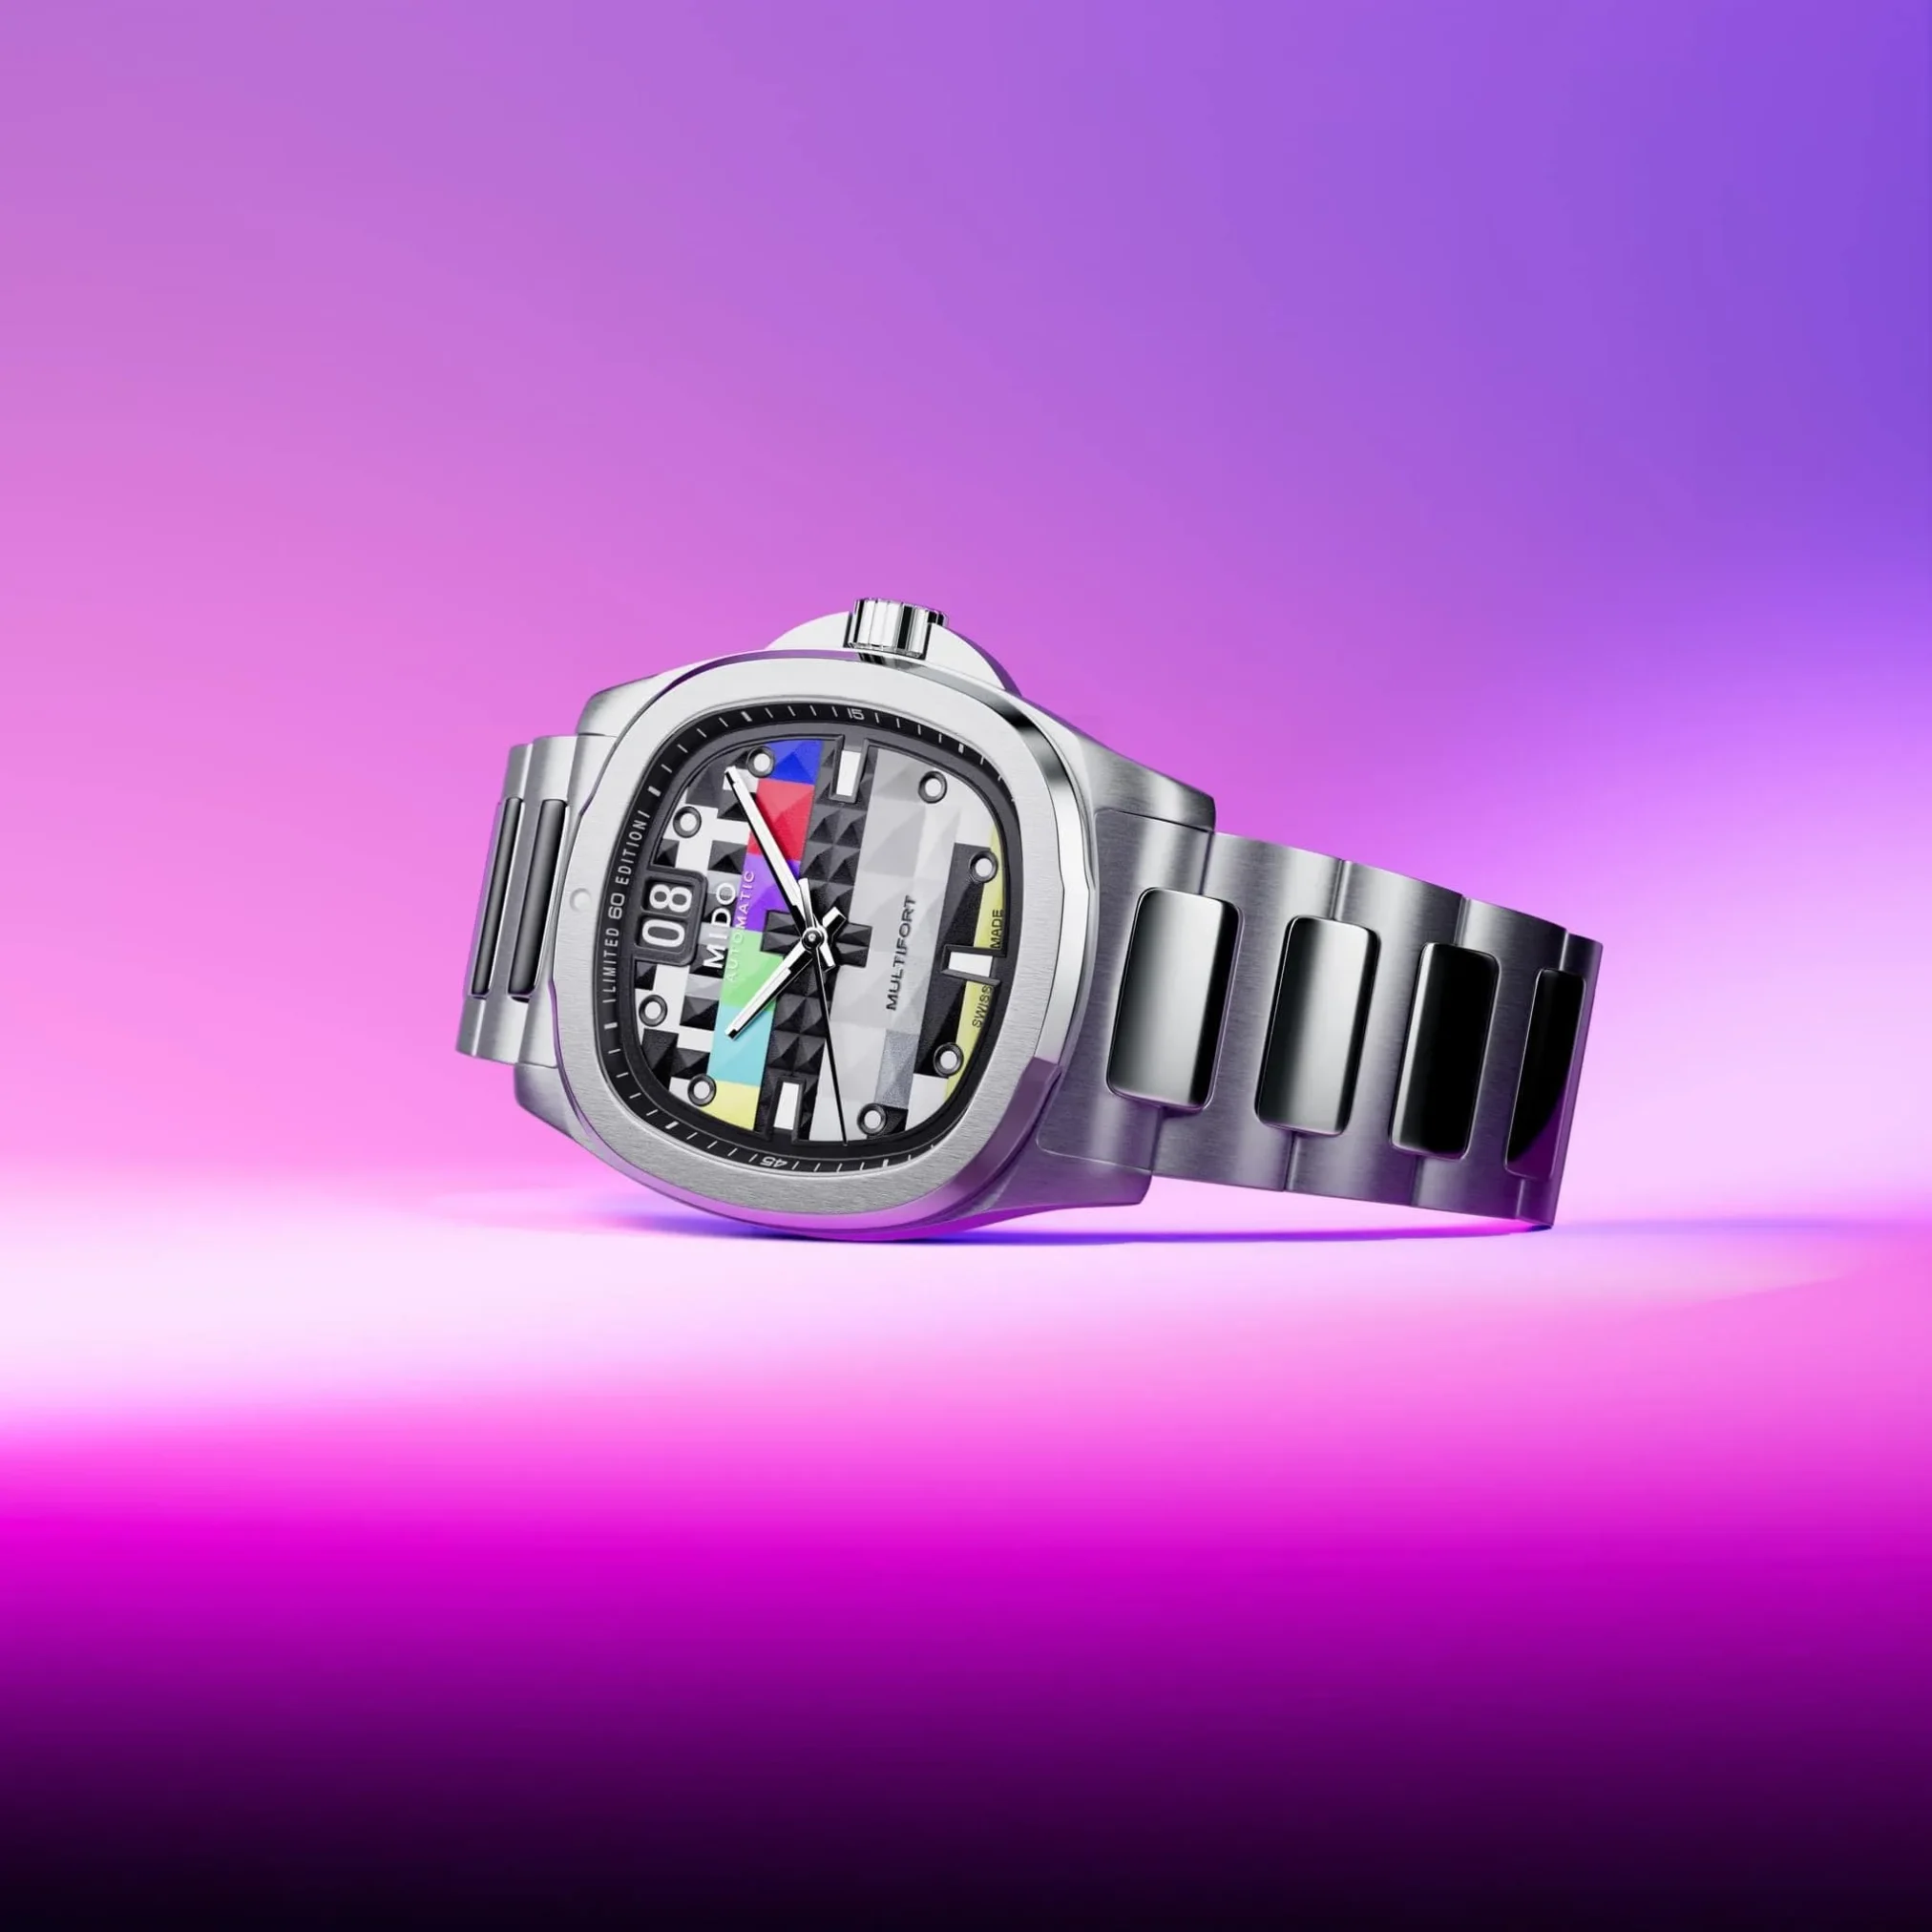 Đồng hồ Mido Multifort TV Big Date Limited Edition M049.526.11.081.01 mặt số đa màu. Dây đeo bằng thép và cao su. Thân vỏ bằng thép.